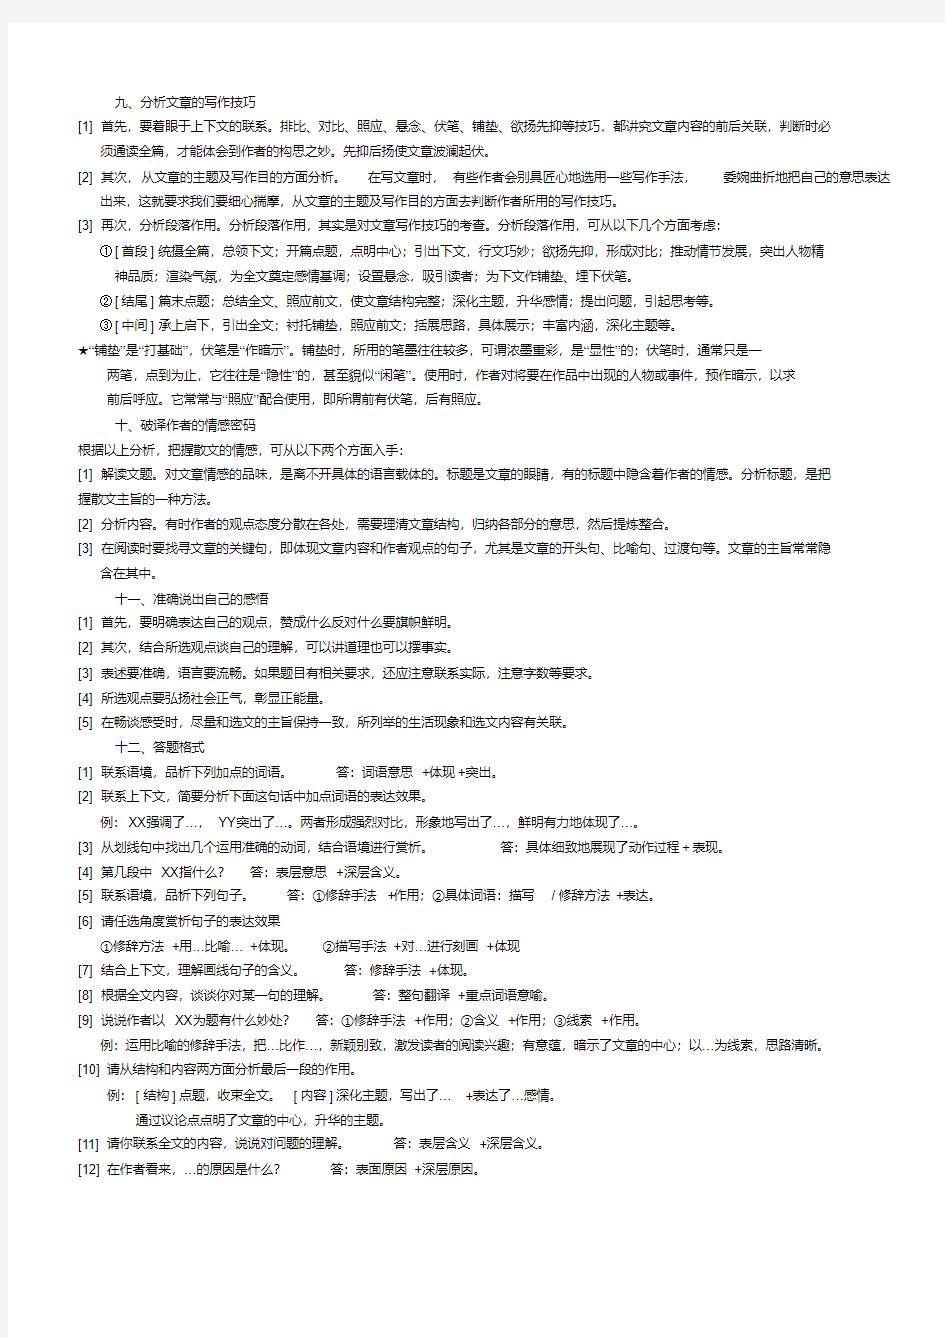 (完整)人教版初中语文现代文阅读